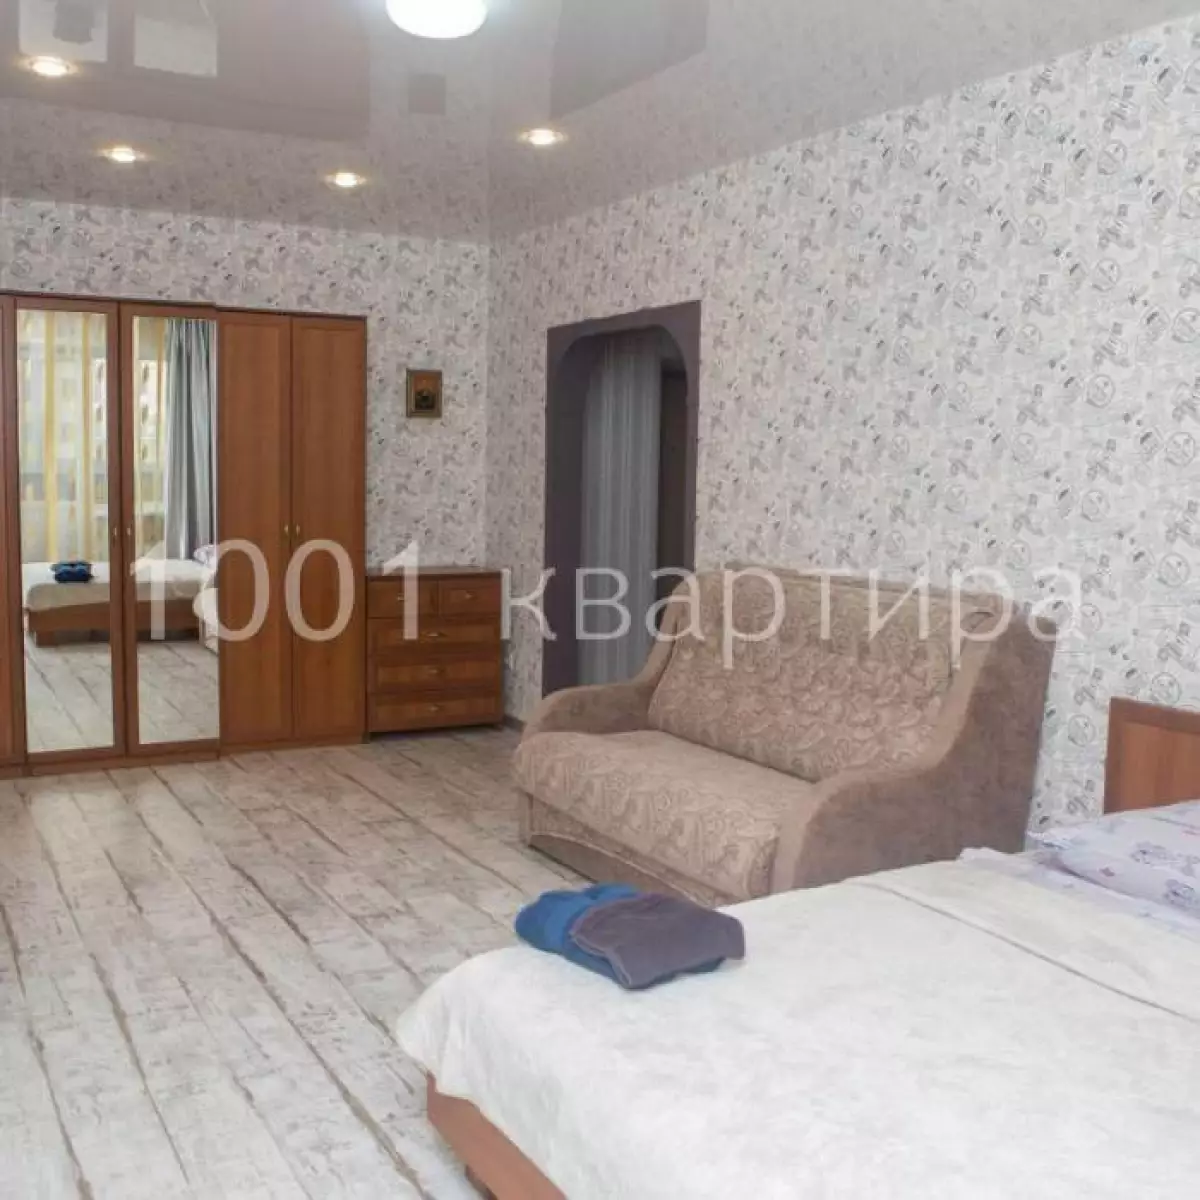 Вариант #124826 для аренды посуточно в Казани Чистопольская, д.72 на 5 гостей - фото 3